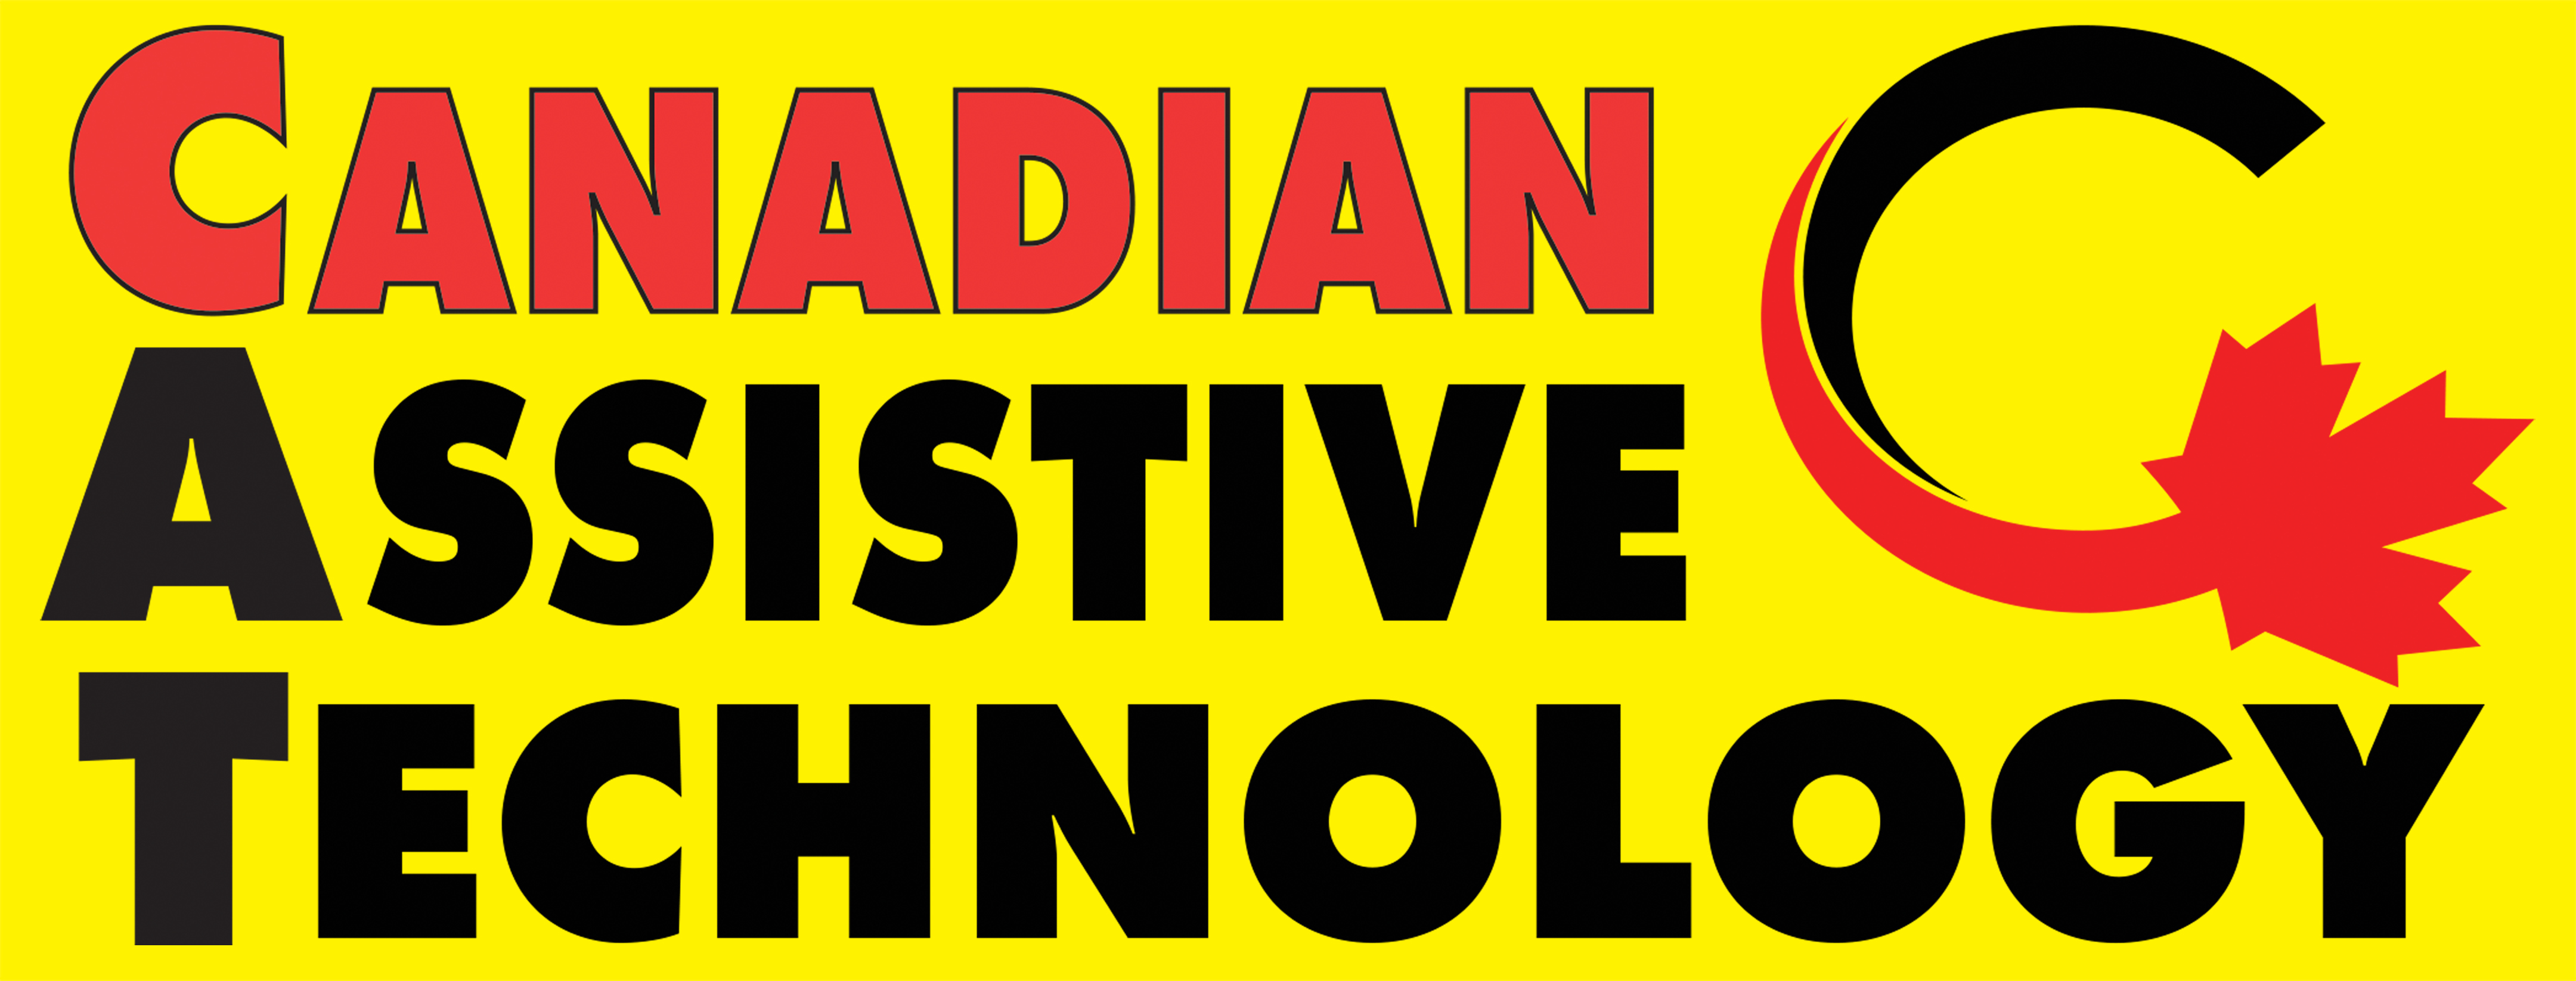 Logo canadien de la technologie d'assistance. Fond jaune avec du texte rouge (canadien) et noir (technologie d'assistance). Dans le coin droit se trouve une lettre C noire et rouge qui se termine par une feuille d'érable rouge.